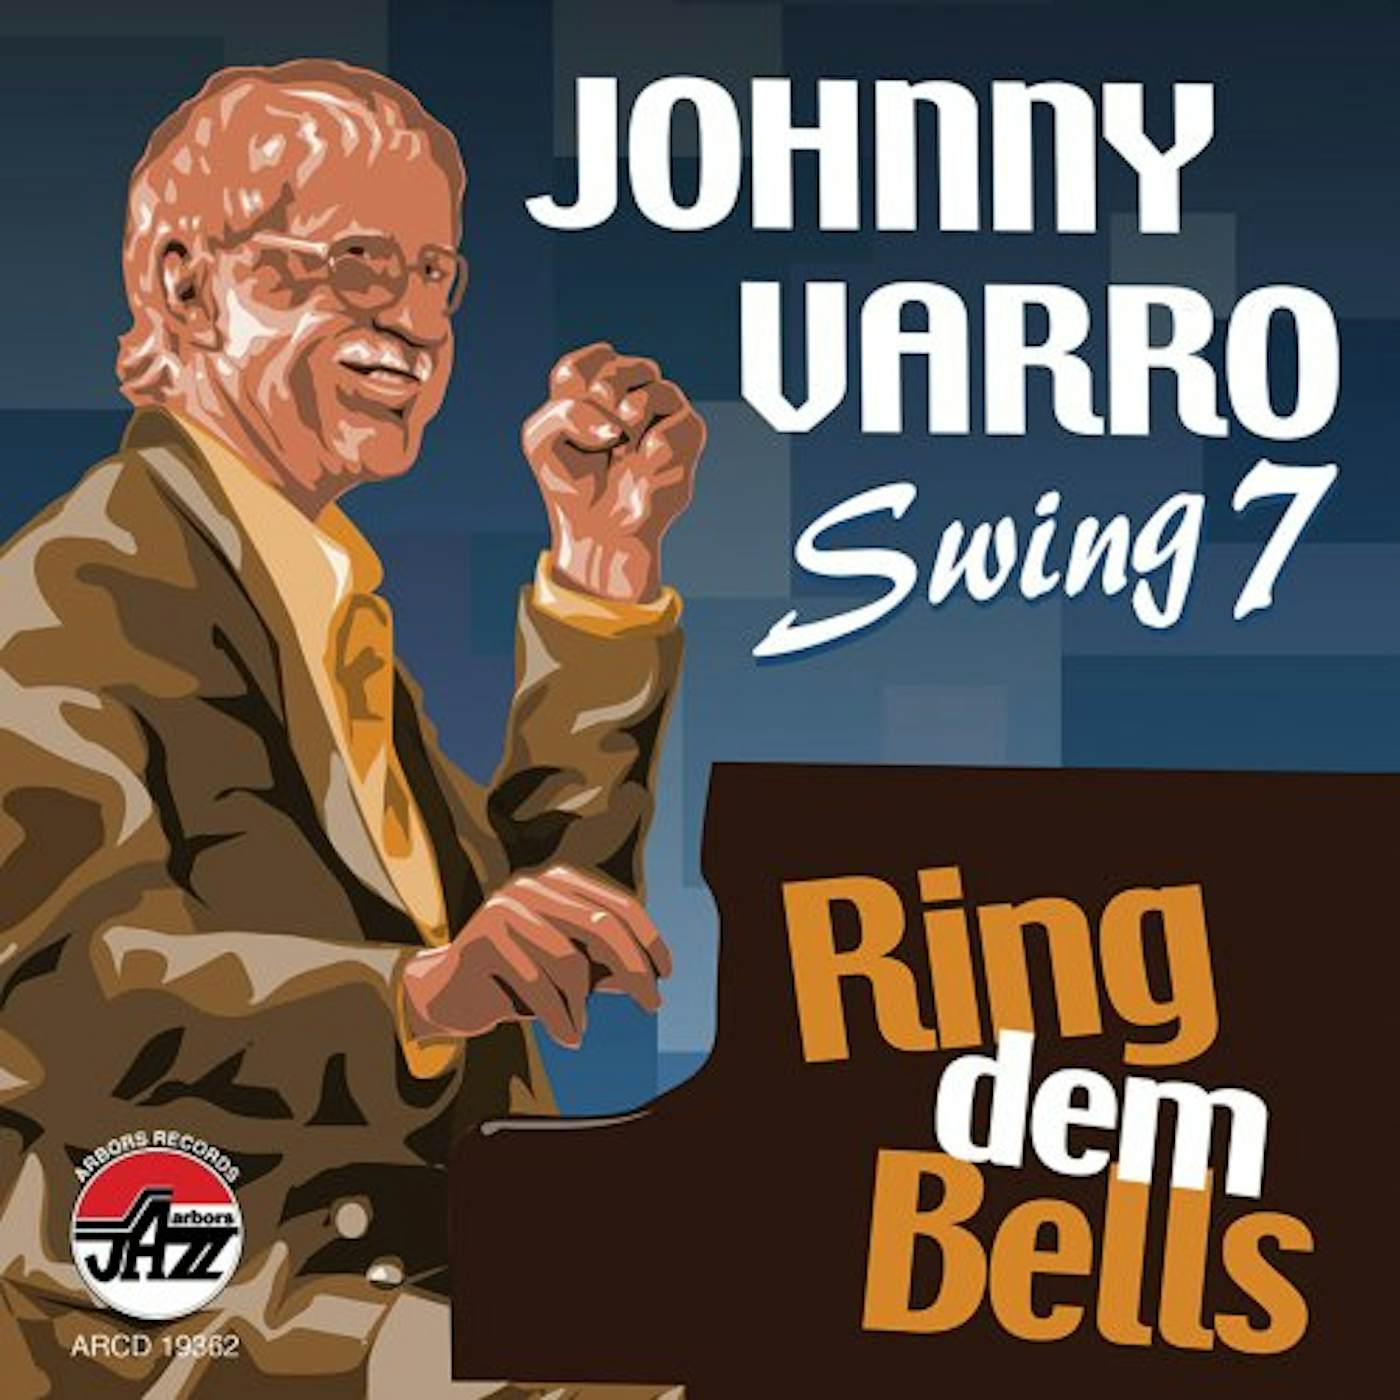 Johnny Varro RING DEM BELLS CD